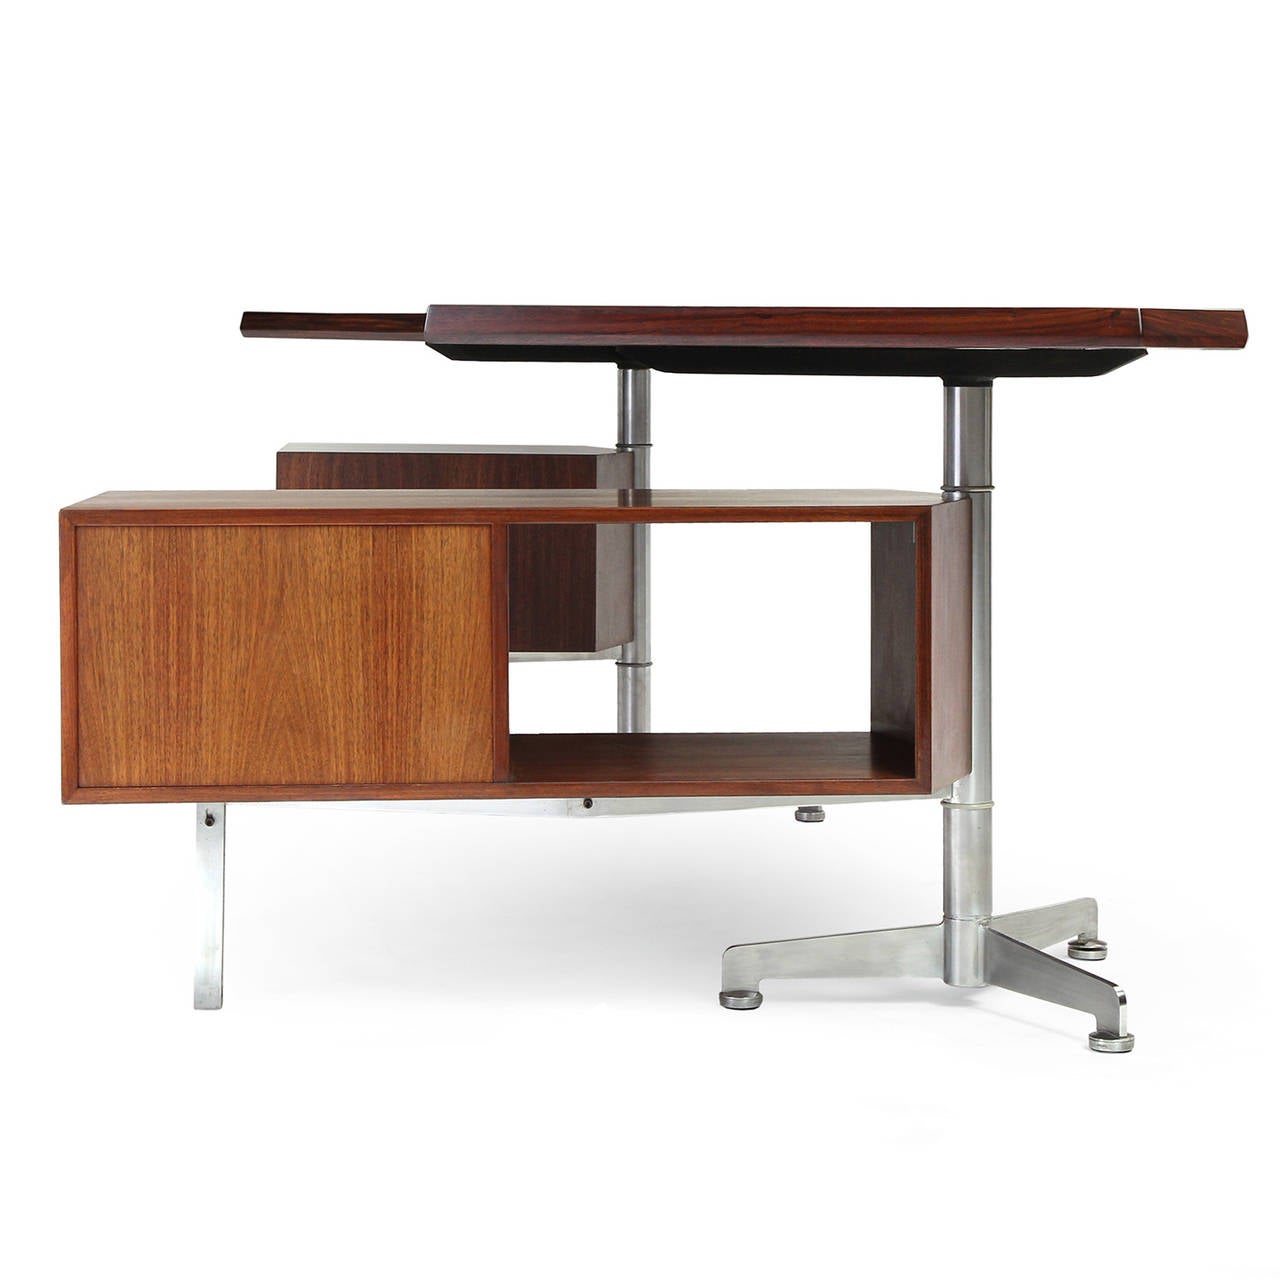 Italian Modernist Desk by Osvaldo Borsani